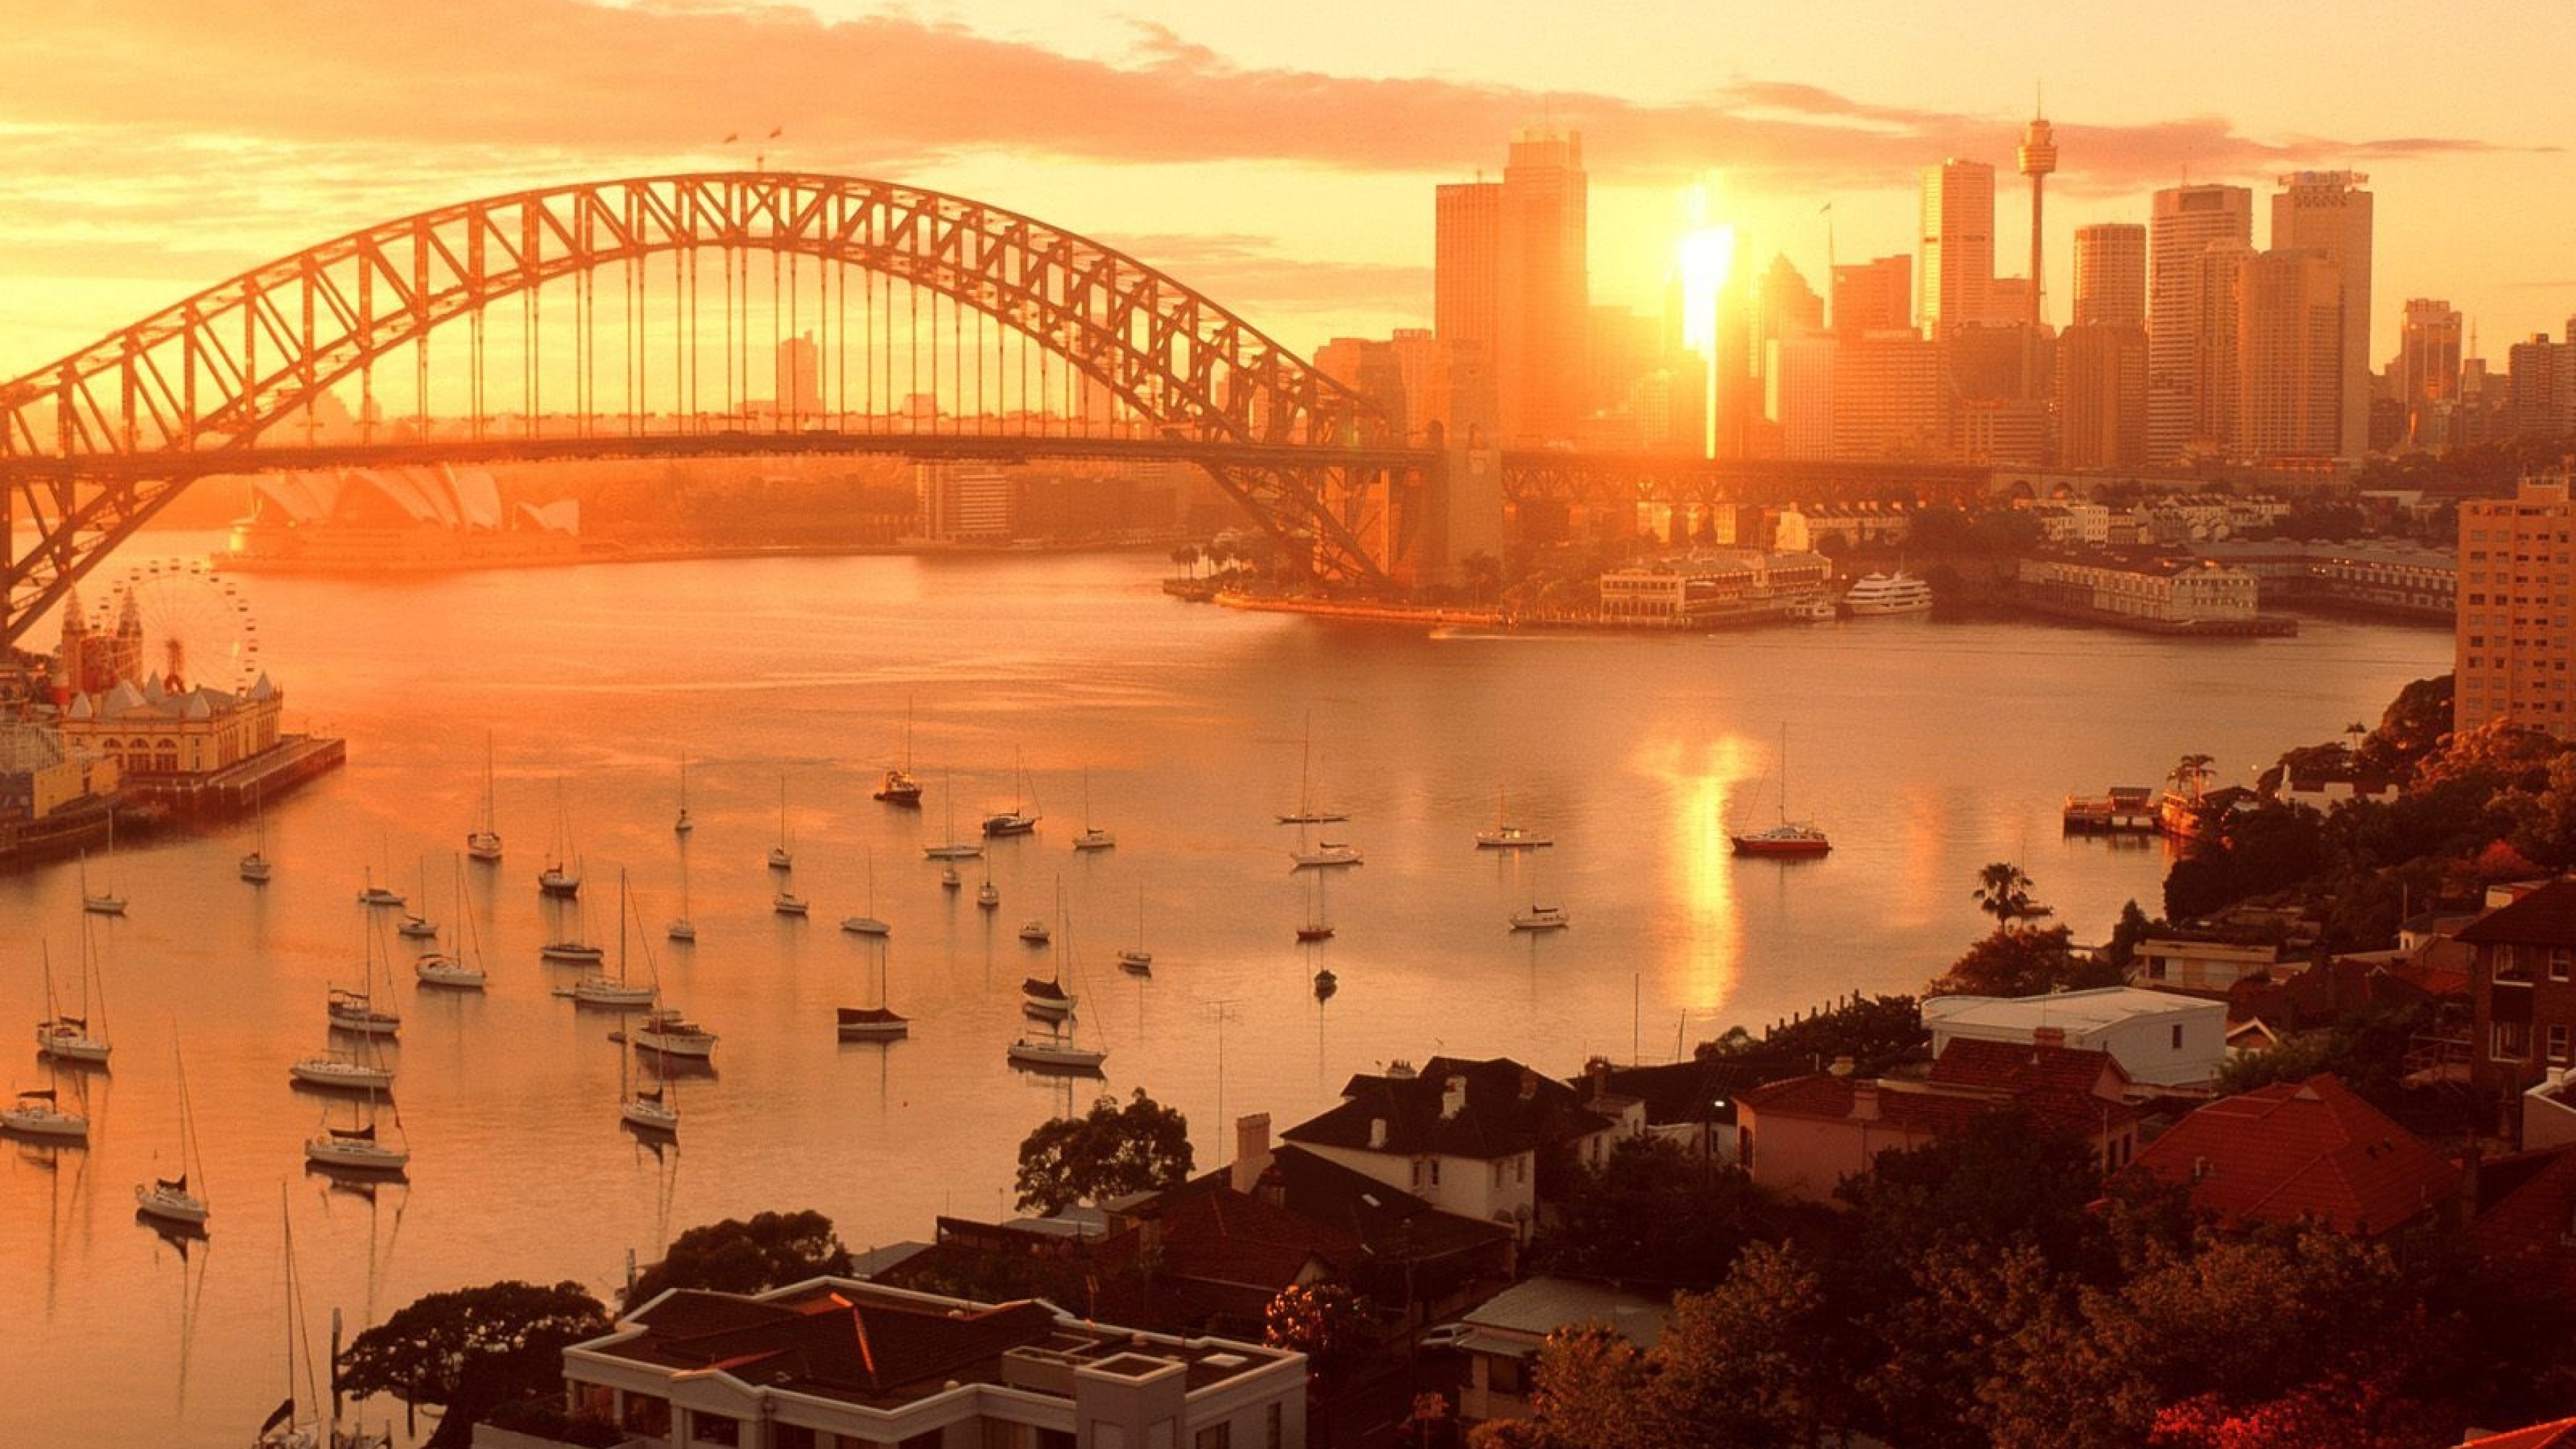 Sydney Harbour Bridge 4K Ultra HD - HD Wallpaper 